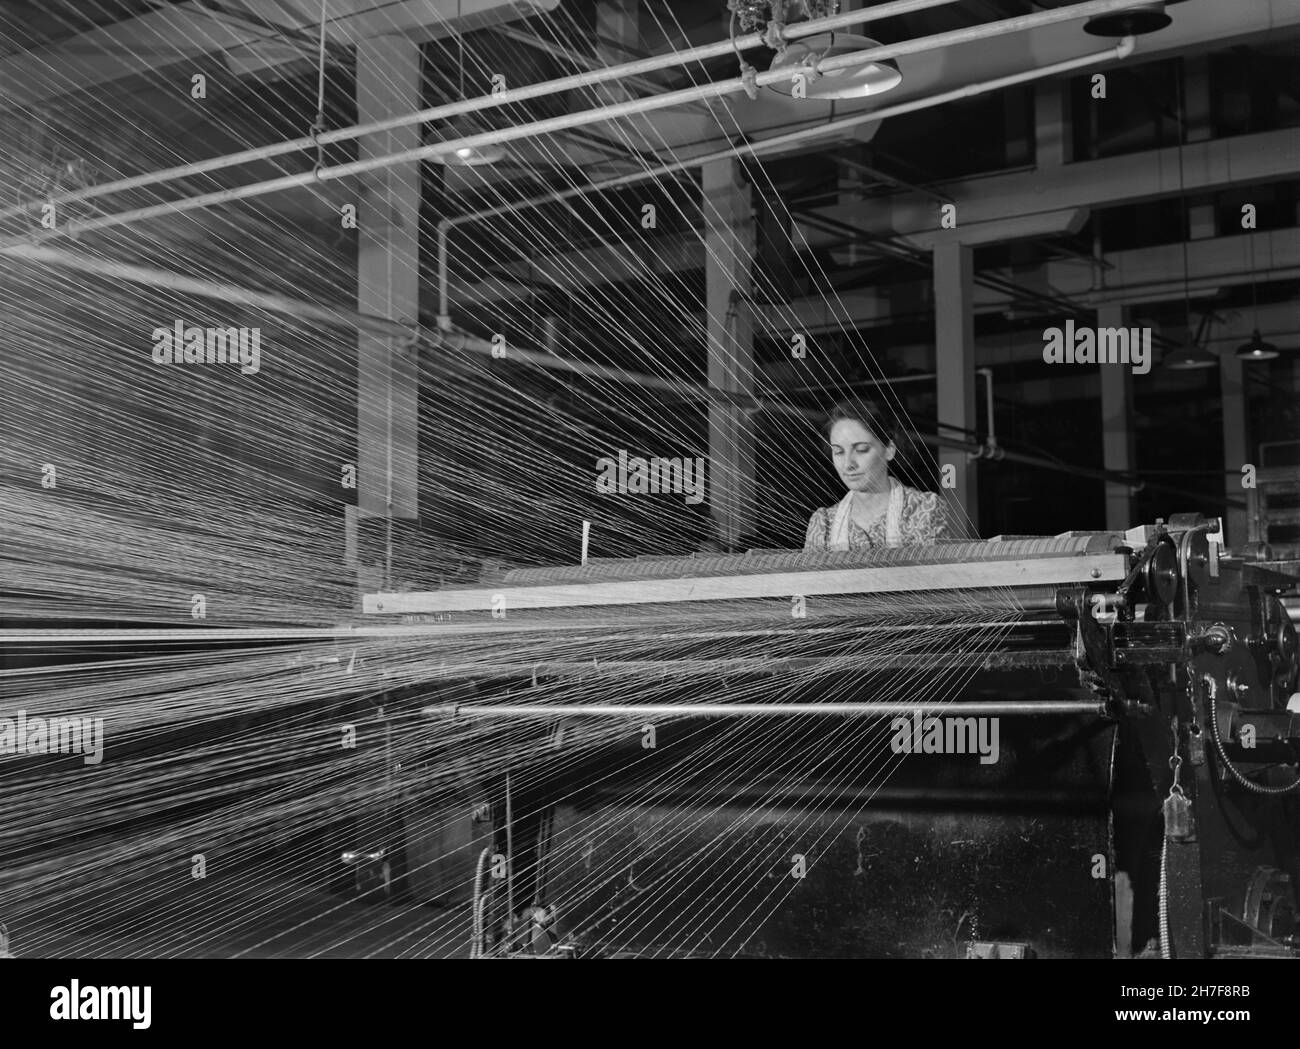 Femme travailleuse, Denomah textile Mill, Taftville, Connecticut, États-Unis,Jack Delano, U.S. Farm Security Administration, U.S. Office of War information Photograph Collection, décembre 1940 Banque D'Images